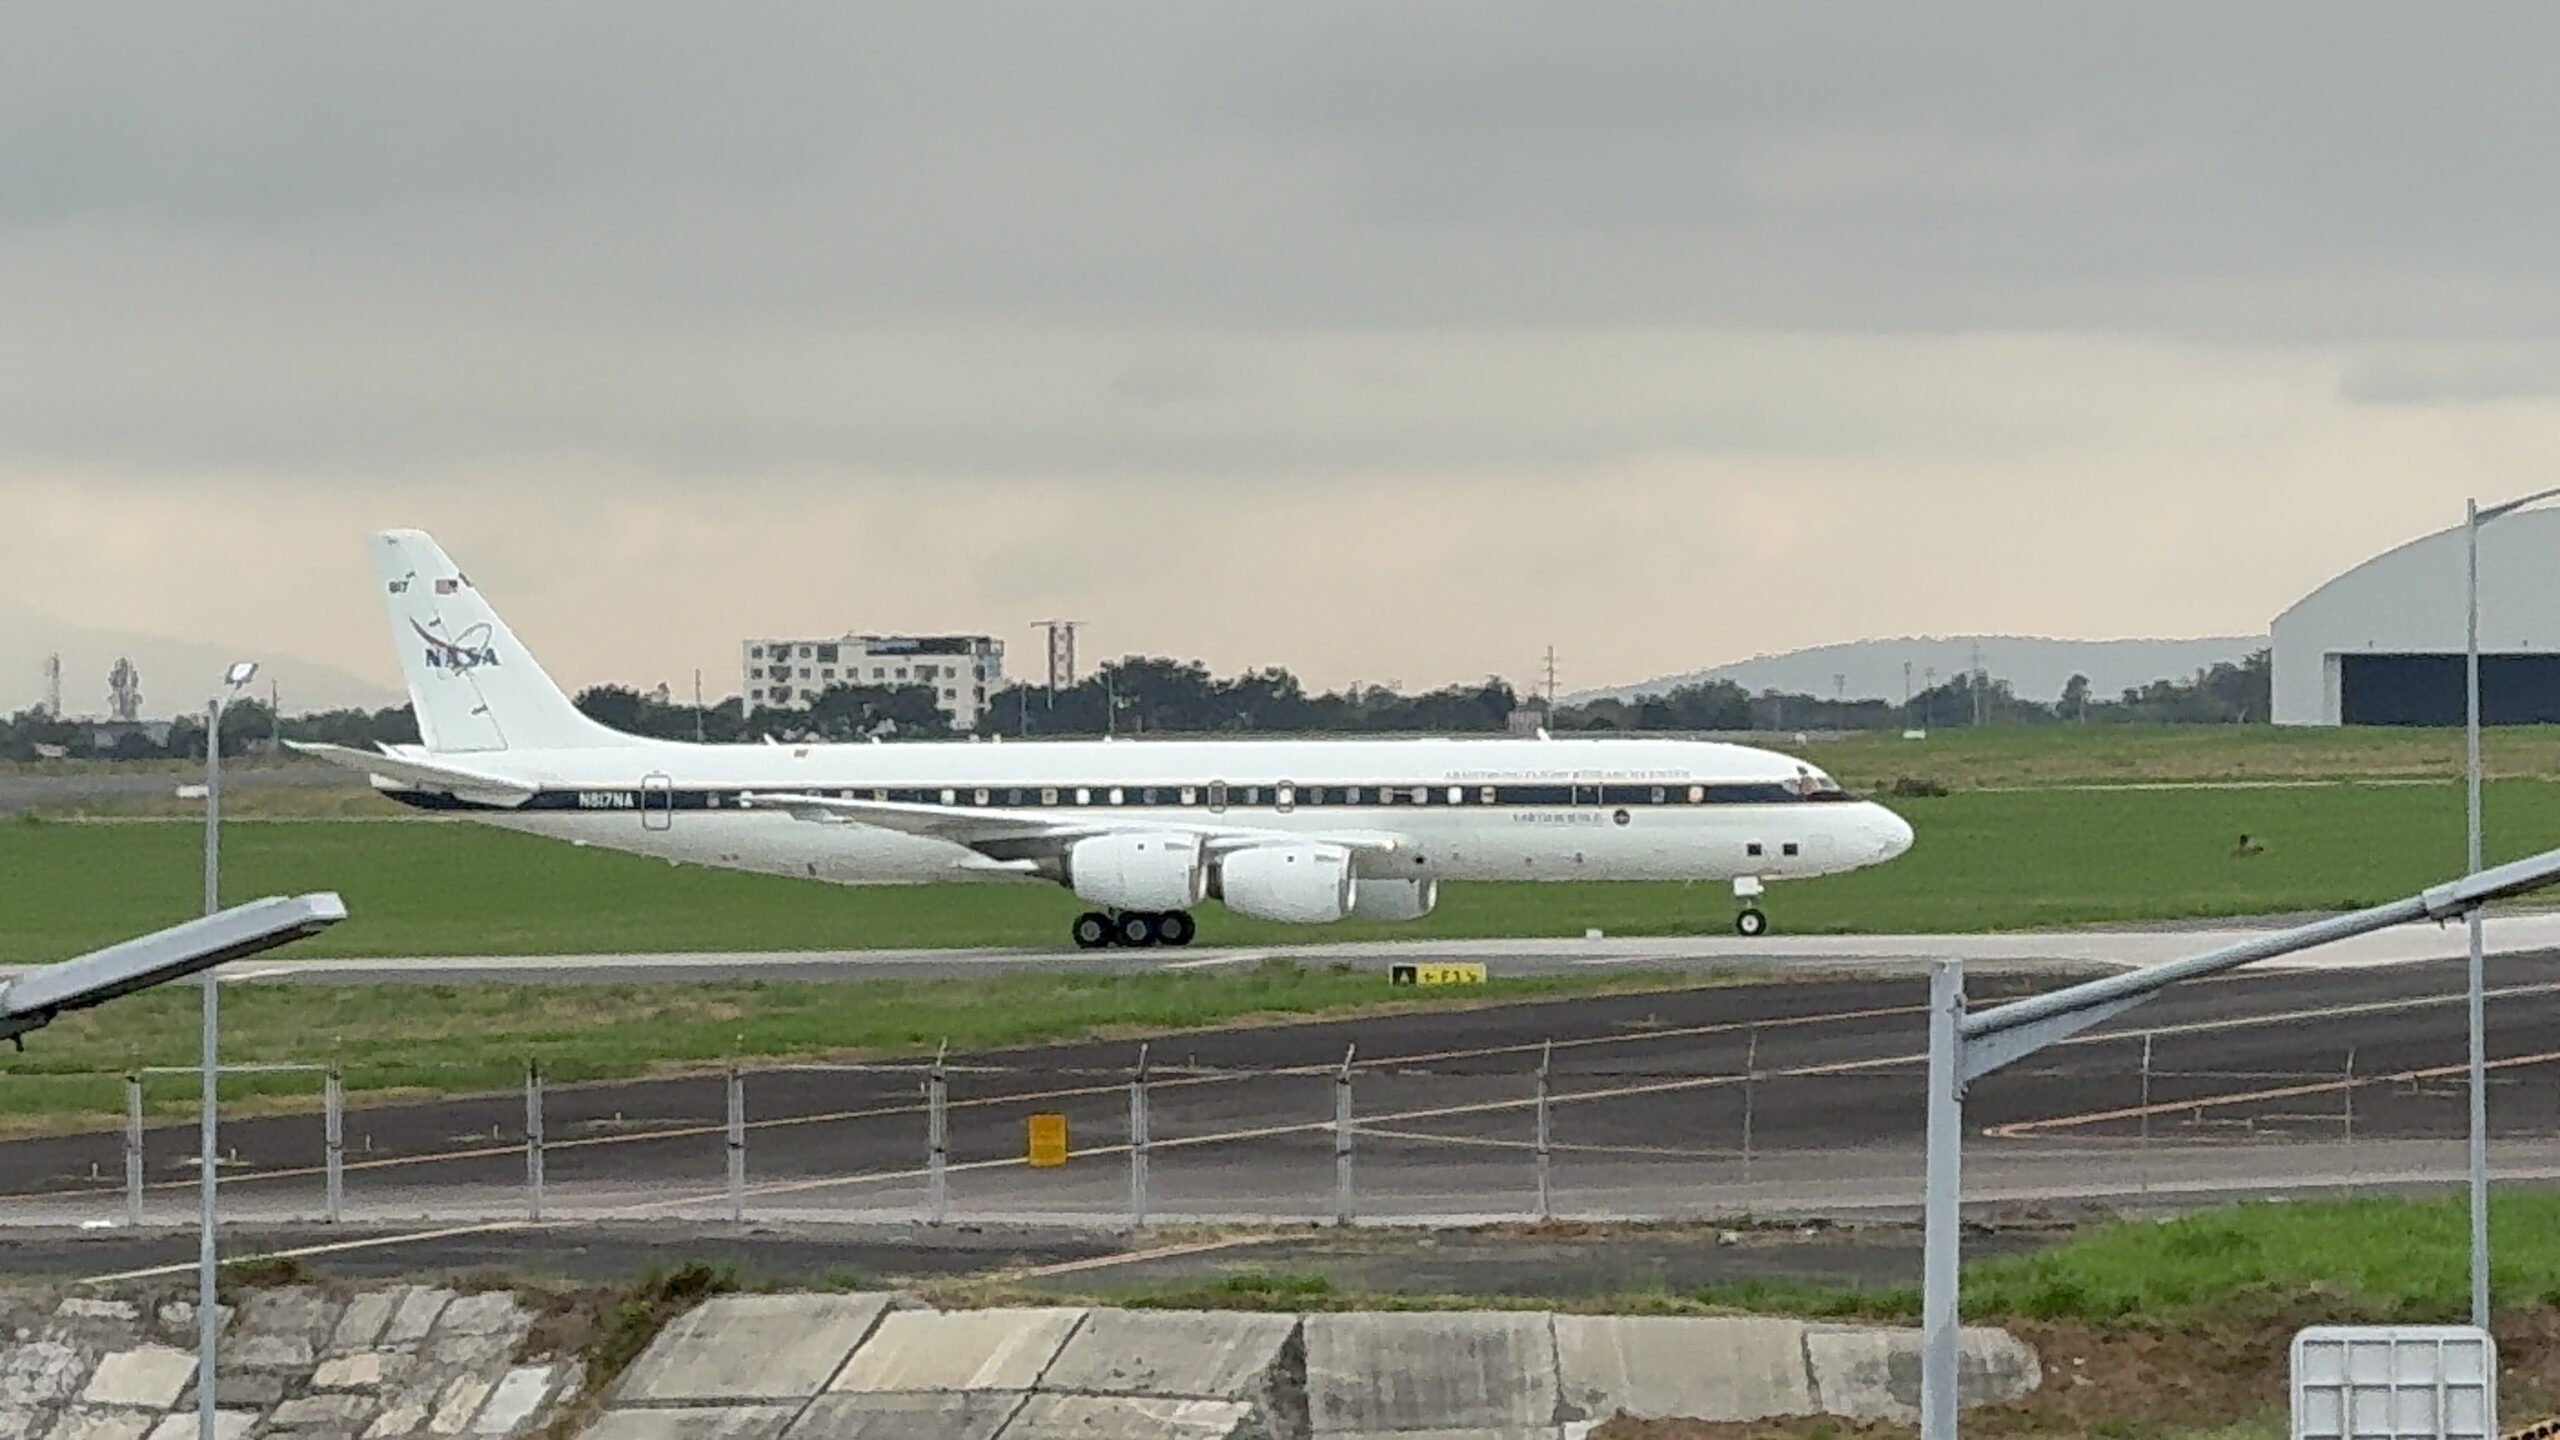 WATCH: NASA DC-8 arrives in Clark